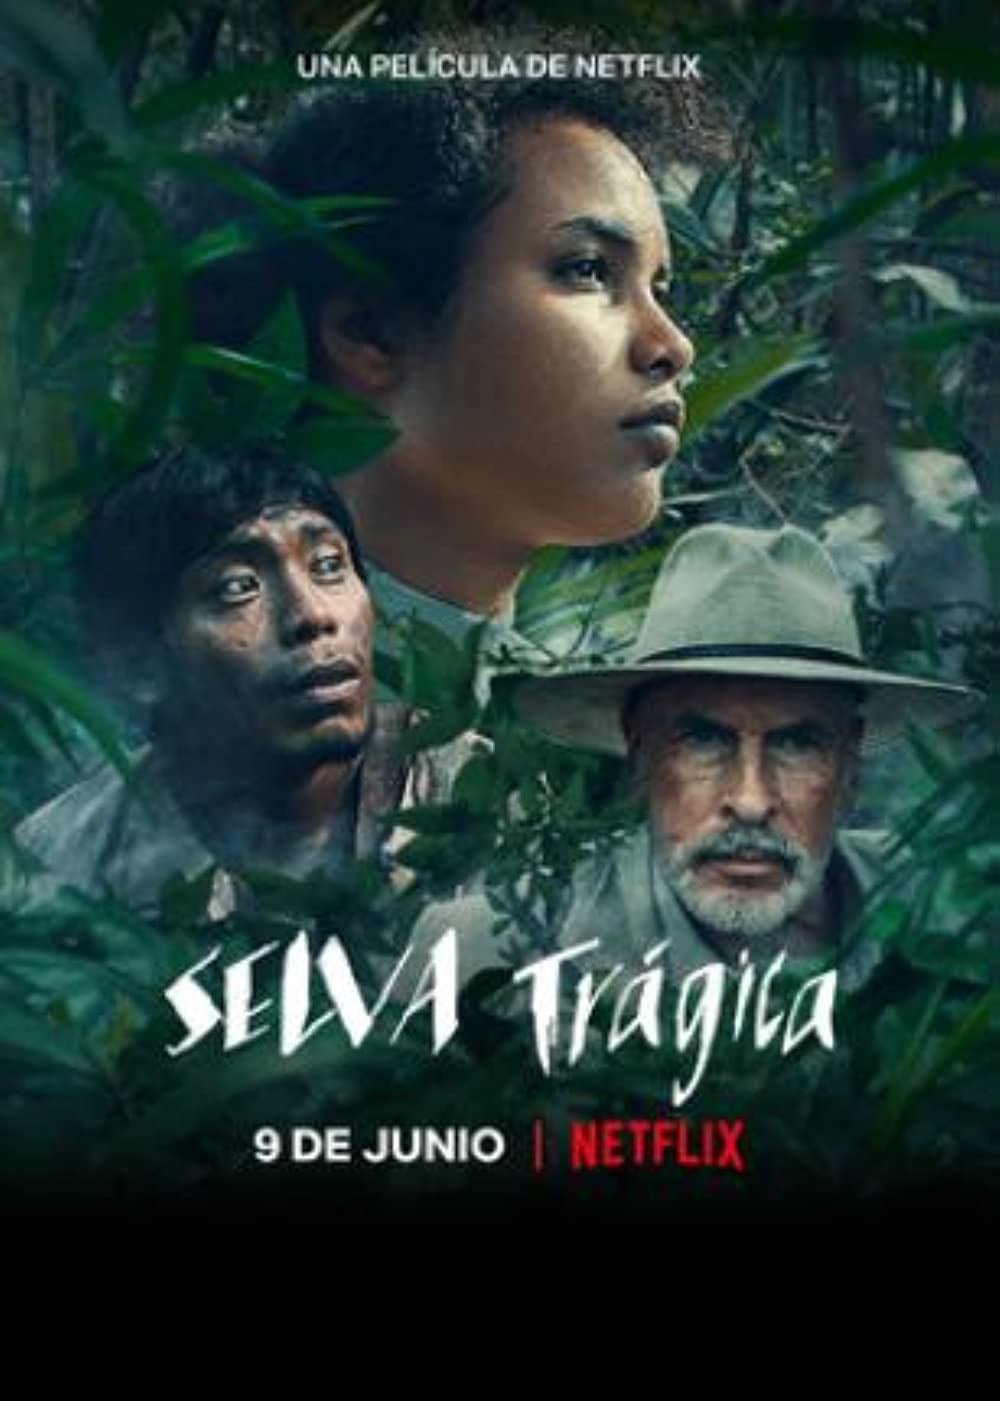 Filmbeschreibung zu Selva trágica